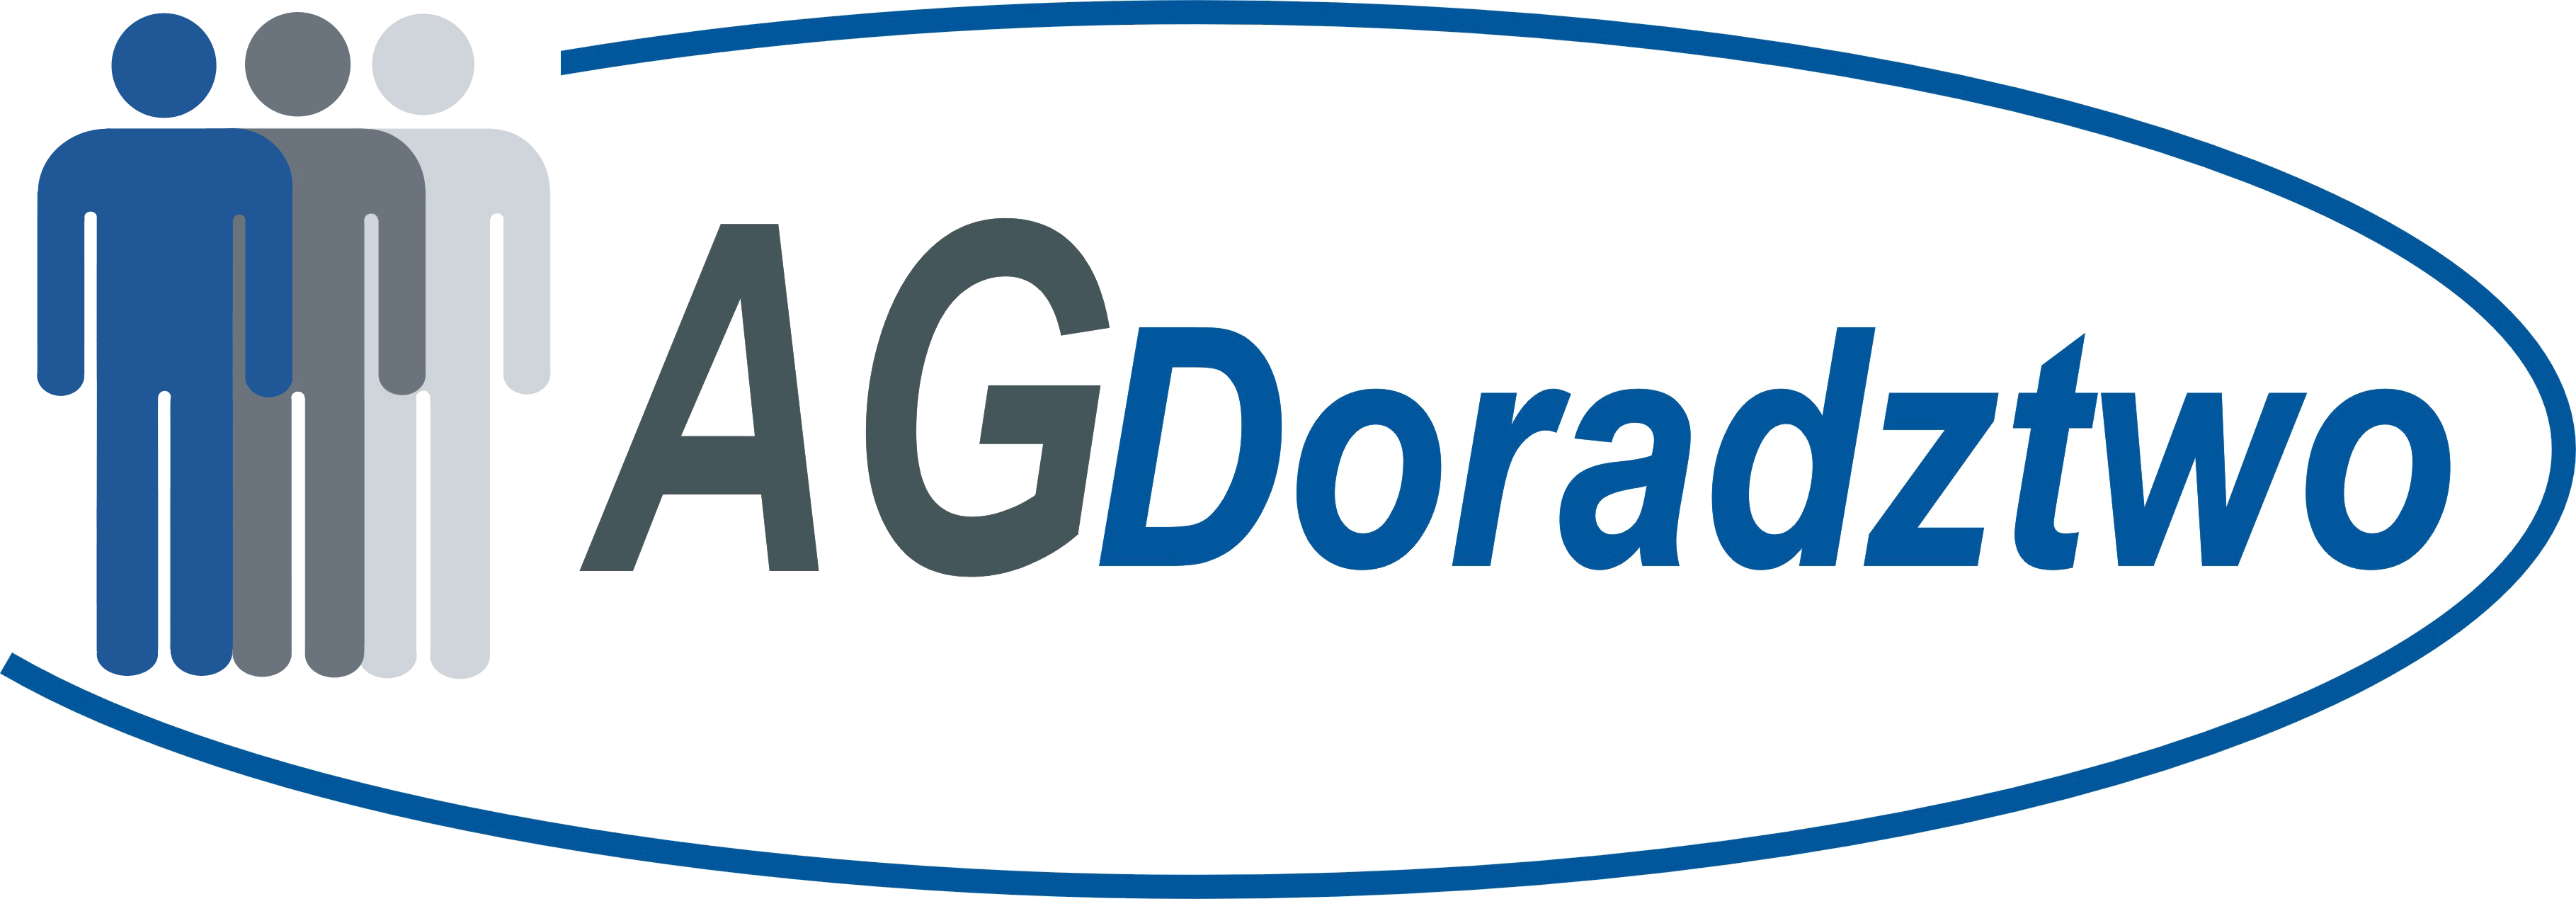 AG - logo przezroczyste